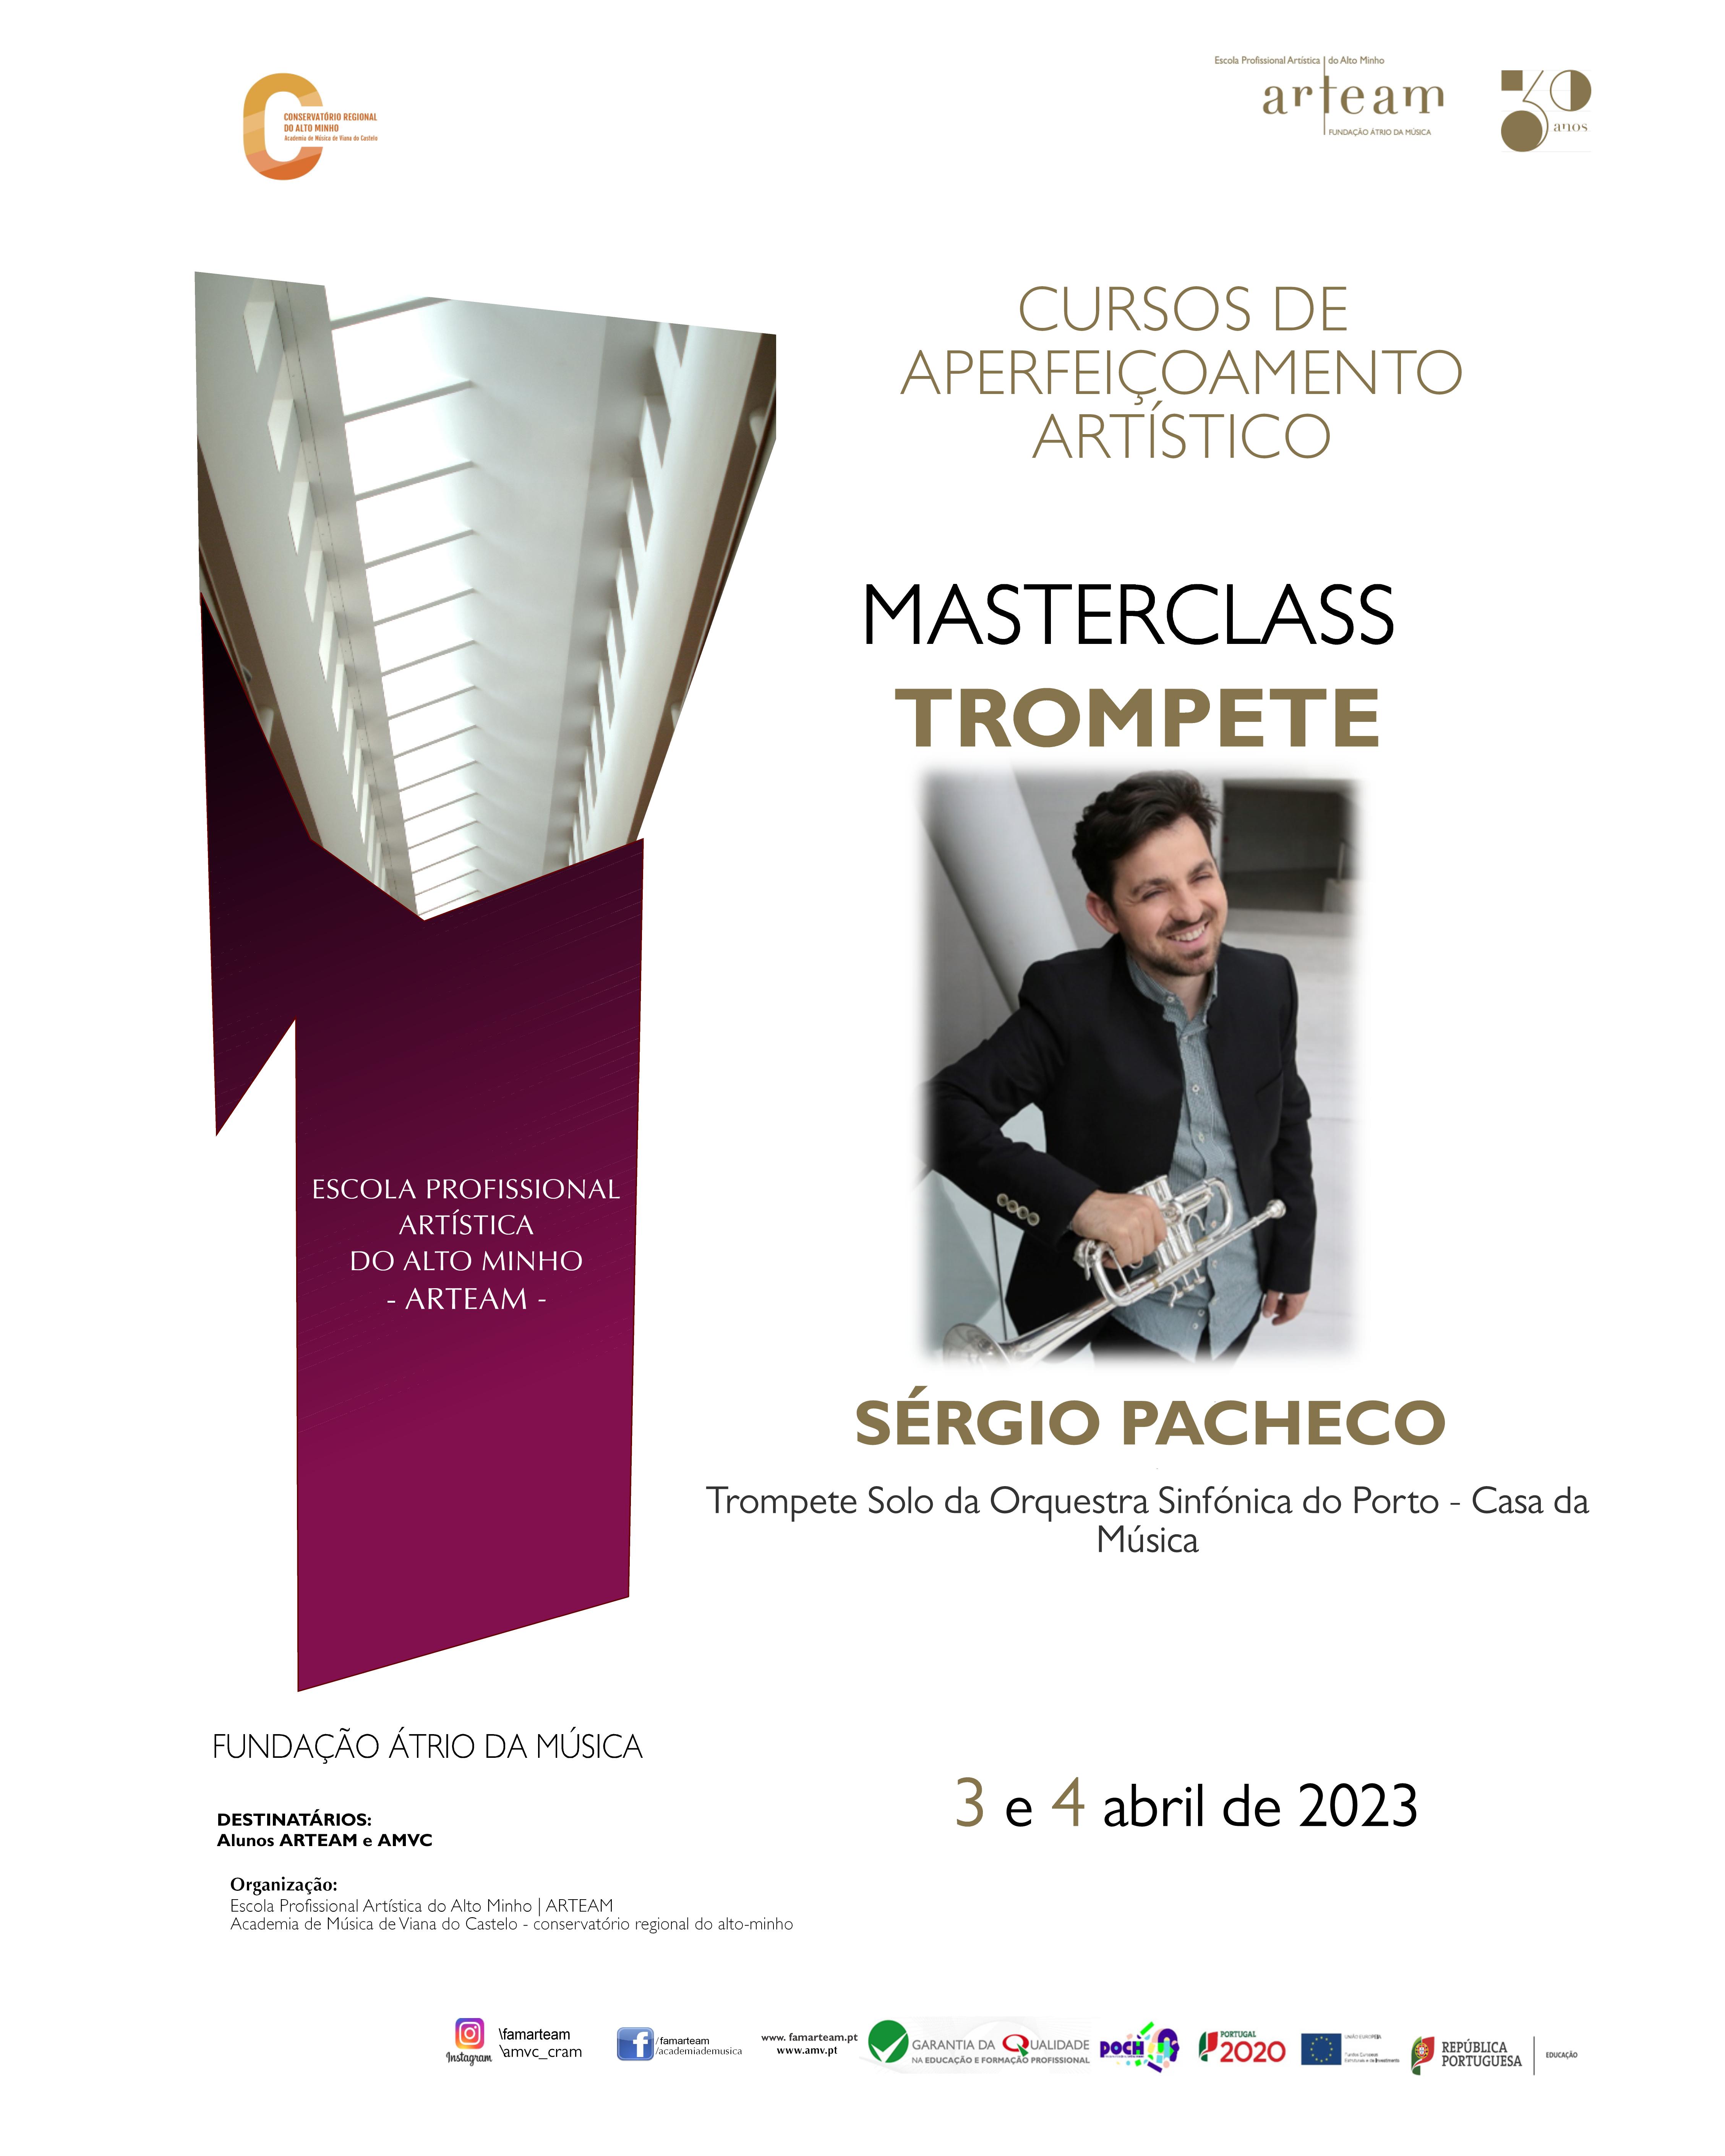 Masterclass de Trompete por Sérgio Pacheco